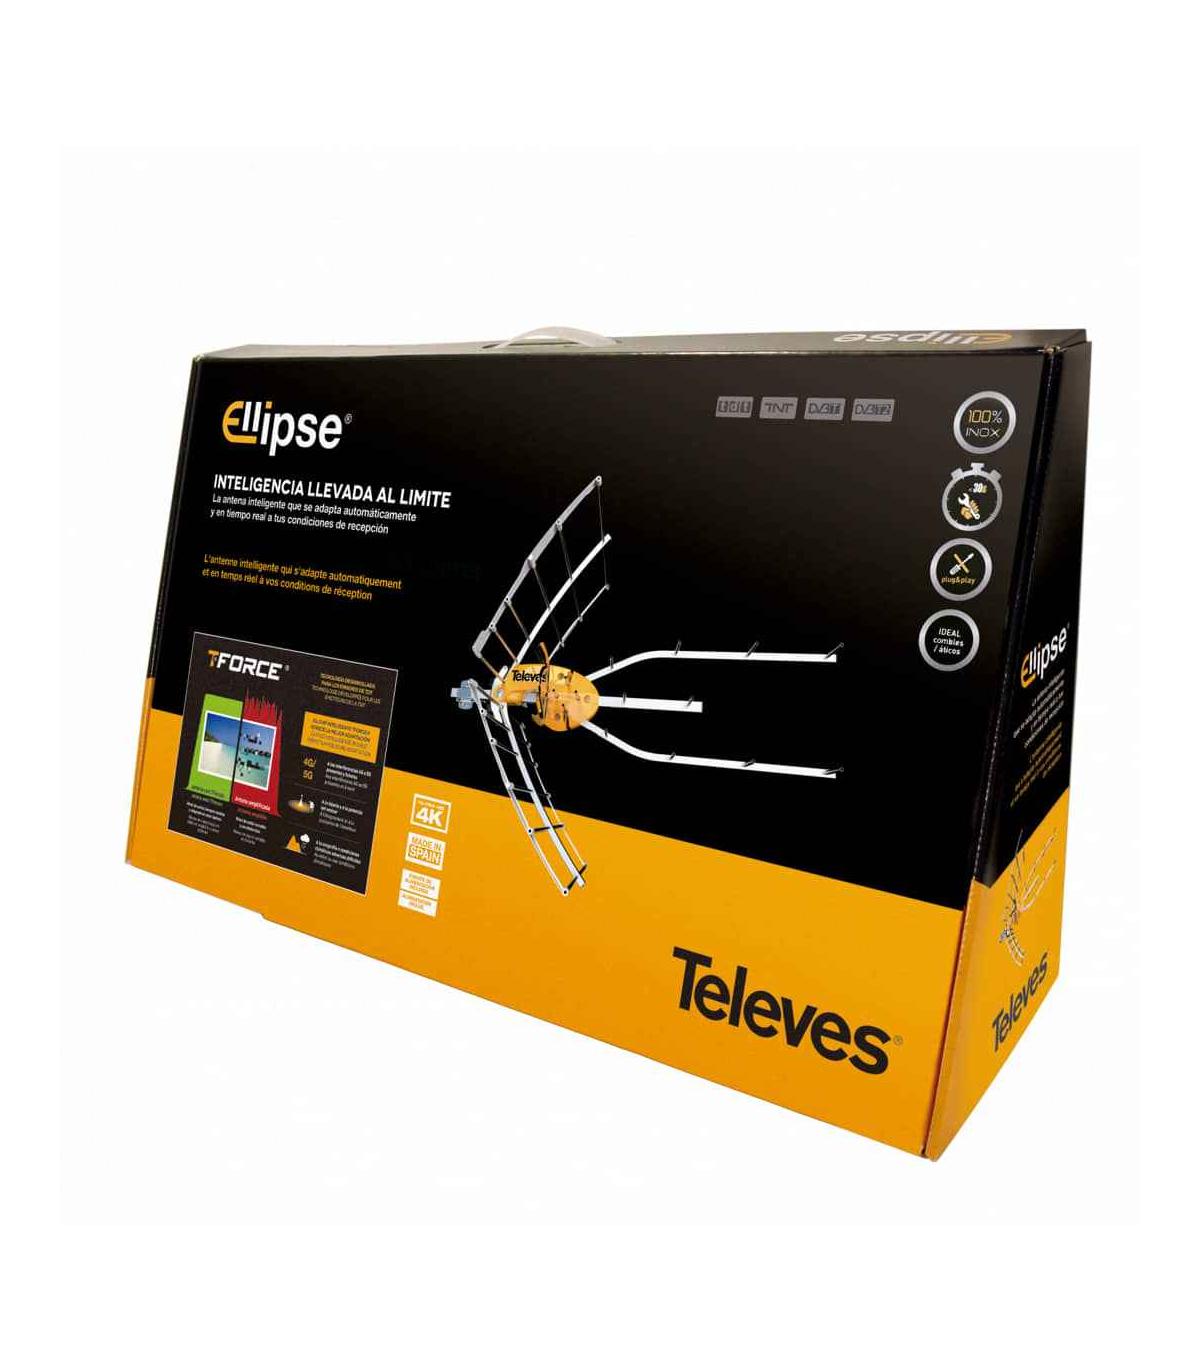 Antena TDT Ellipse UHF Televes 148922 - DivisionLED